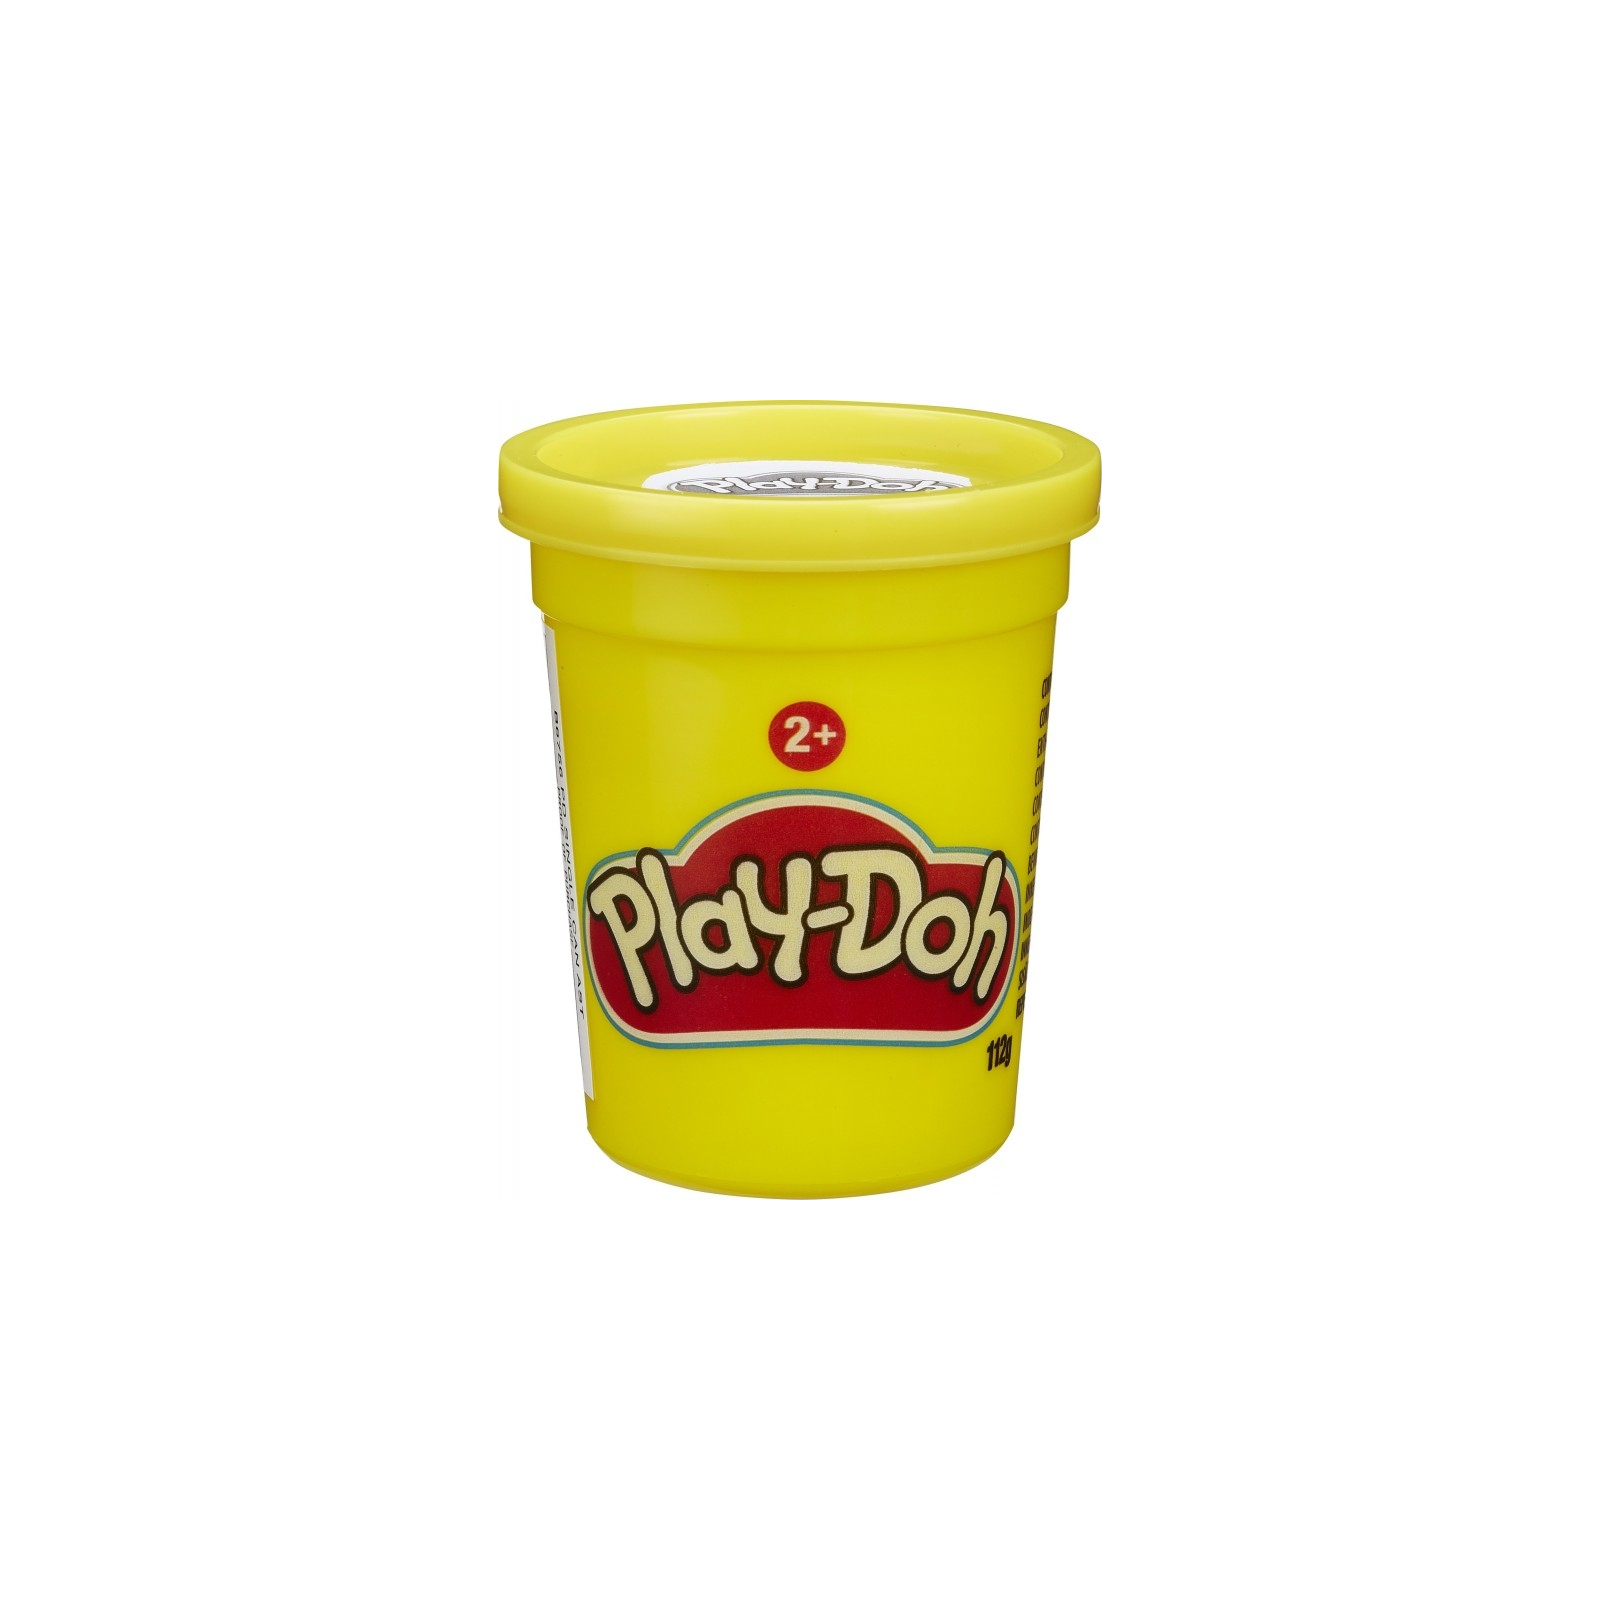 Пластилин Hasbro Play-Doh Желтый (B7412)